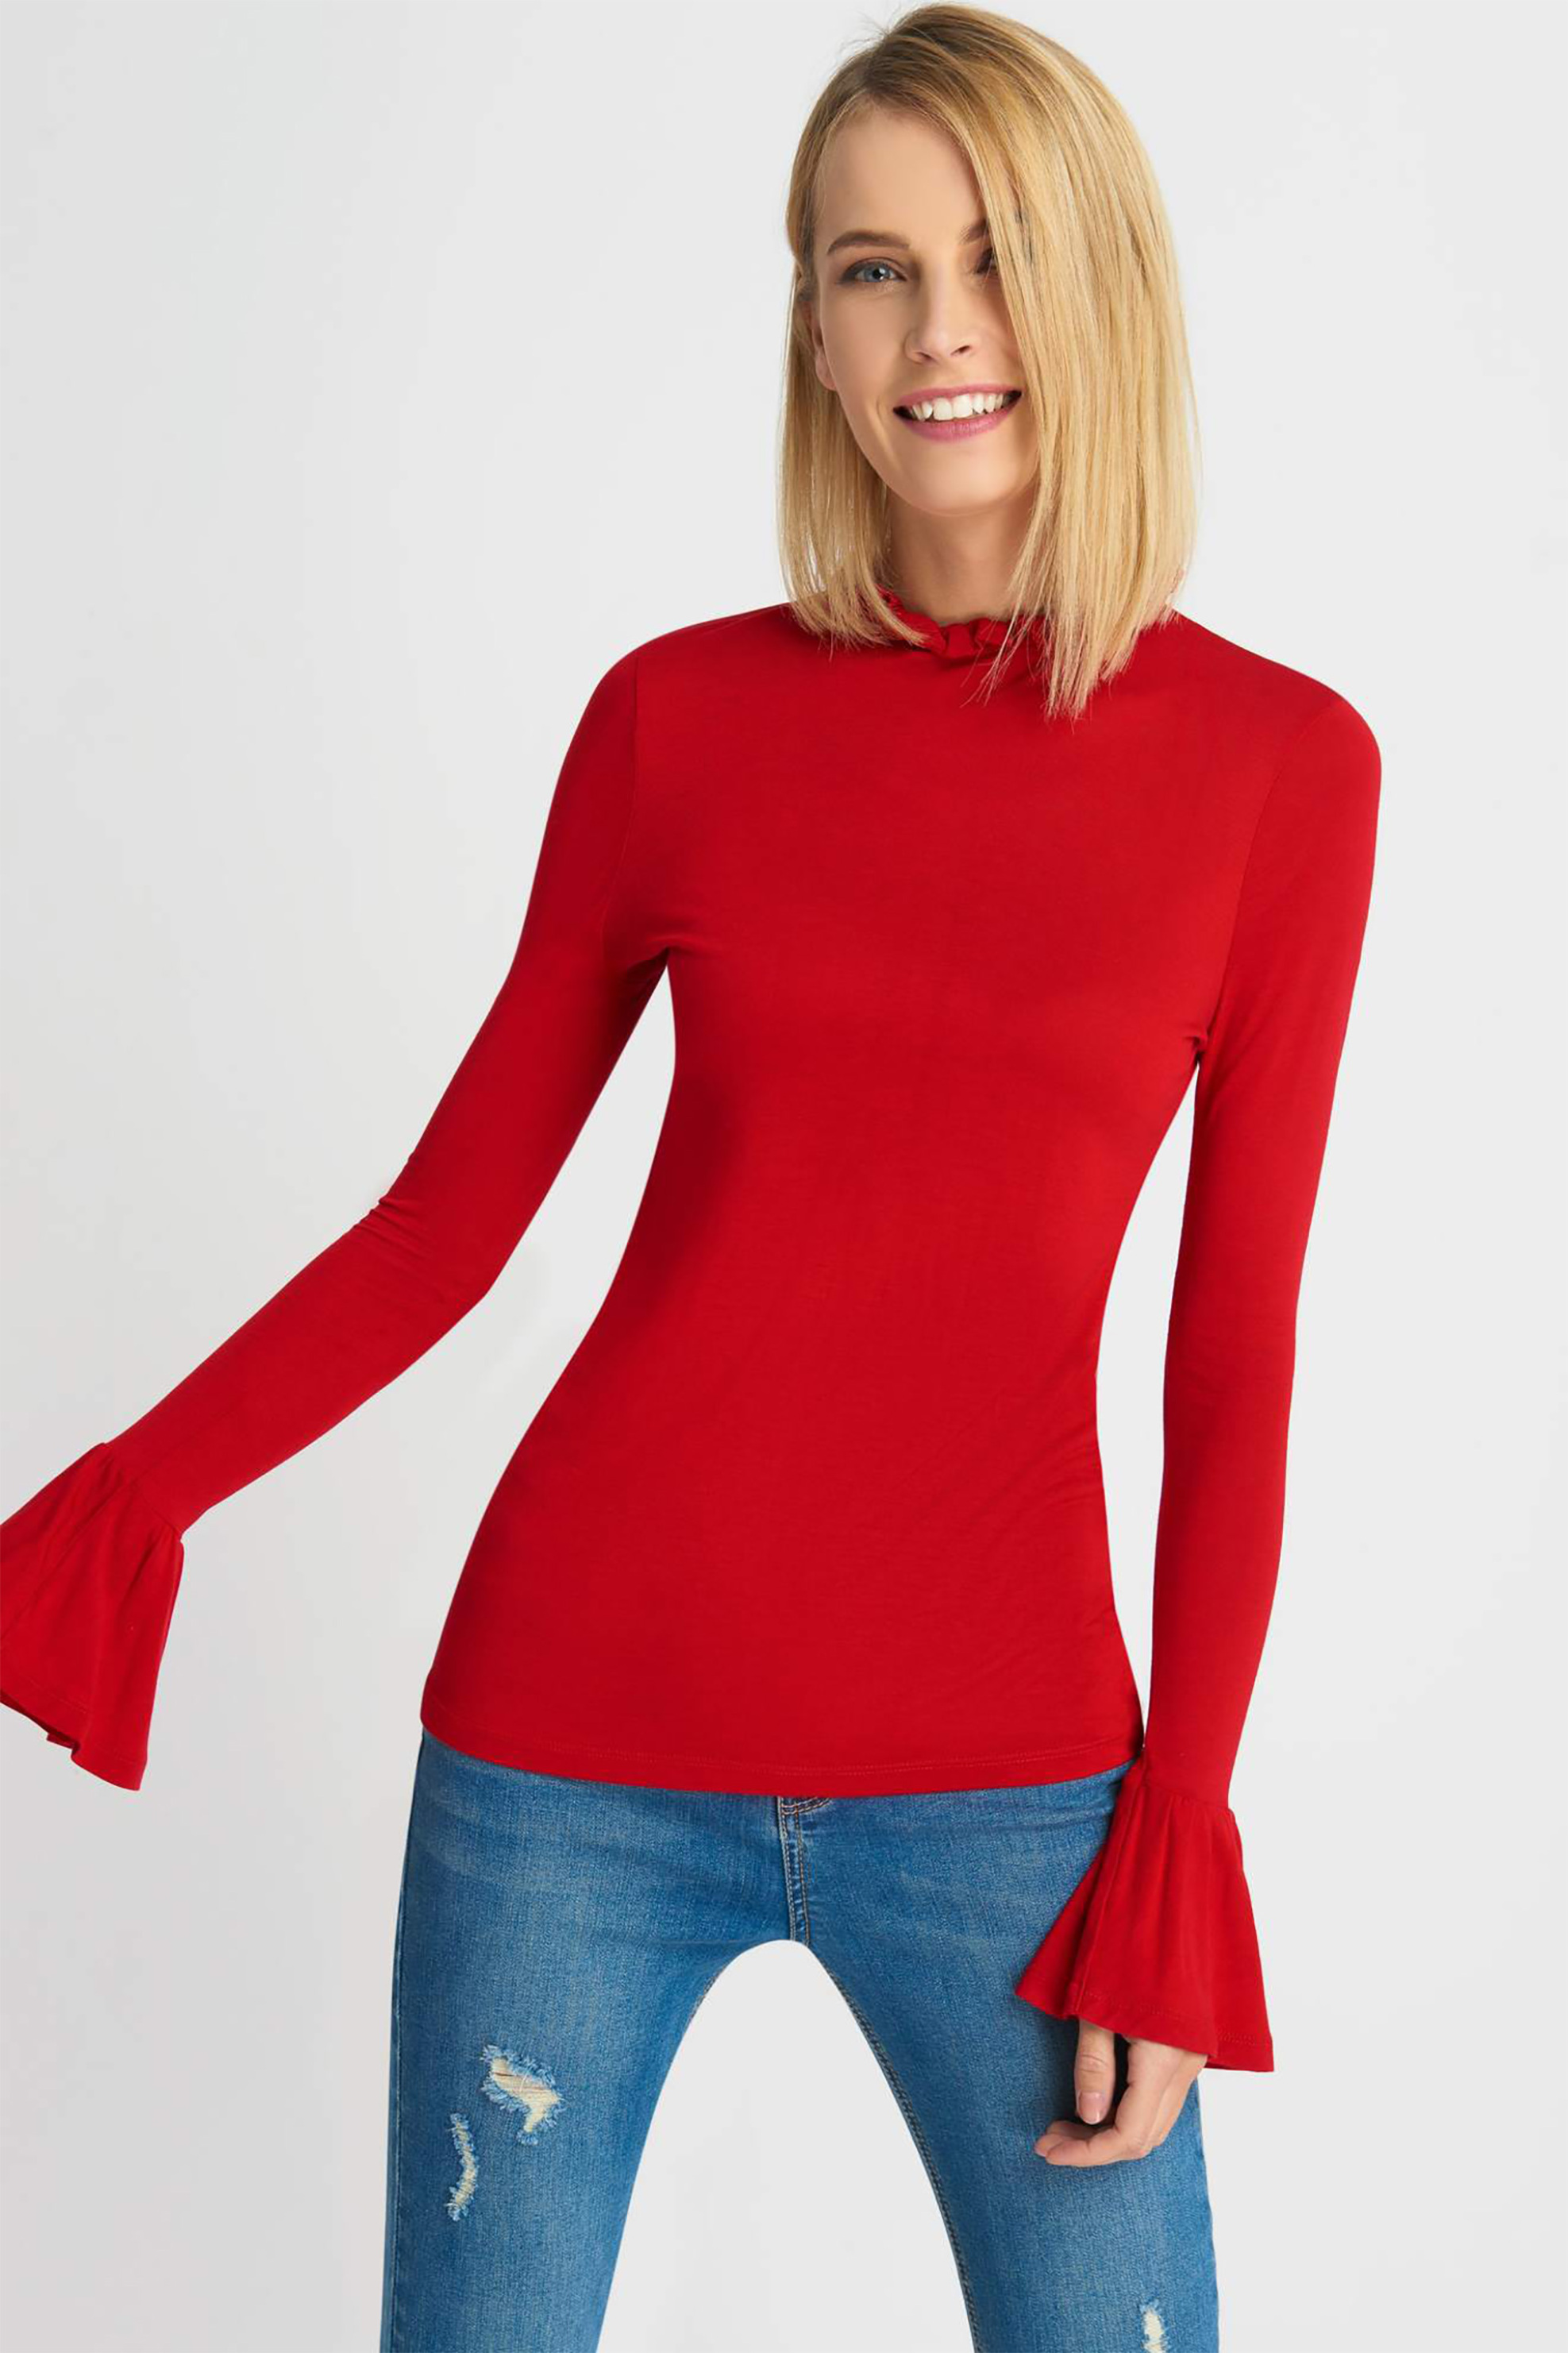 Γυναίκα > ΡΟΥΧΑ > Tops > Μπλούζες > Casual Γυναικεία μπλούζα με βολάν στα μανίκια Orsay - 178084-389000 Κόκκινο